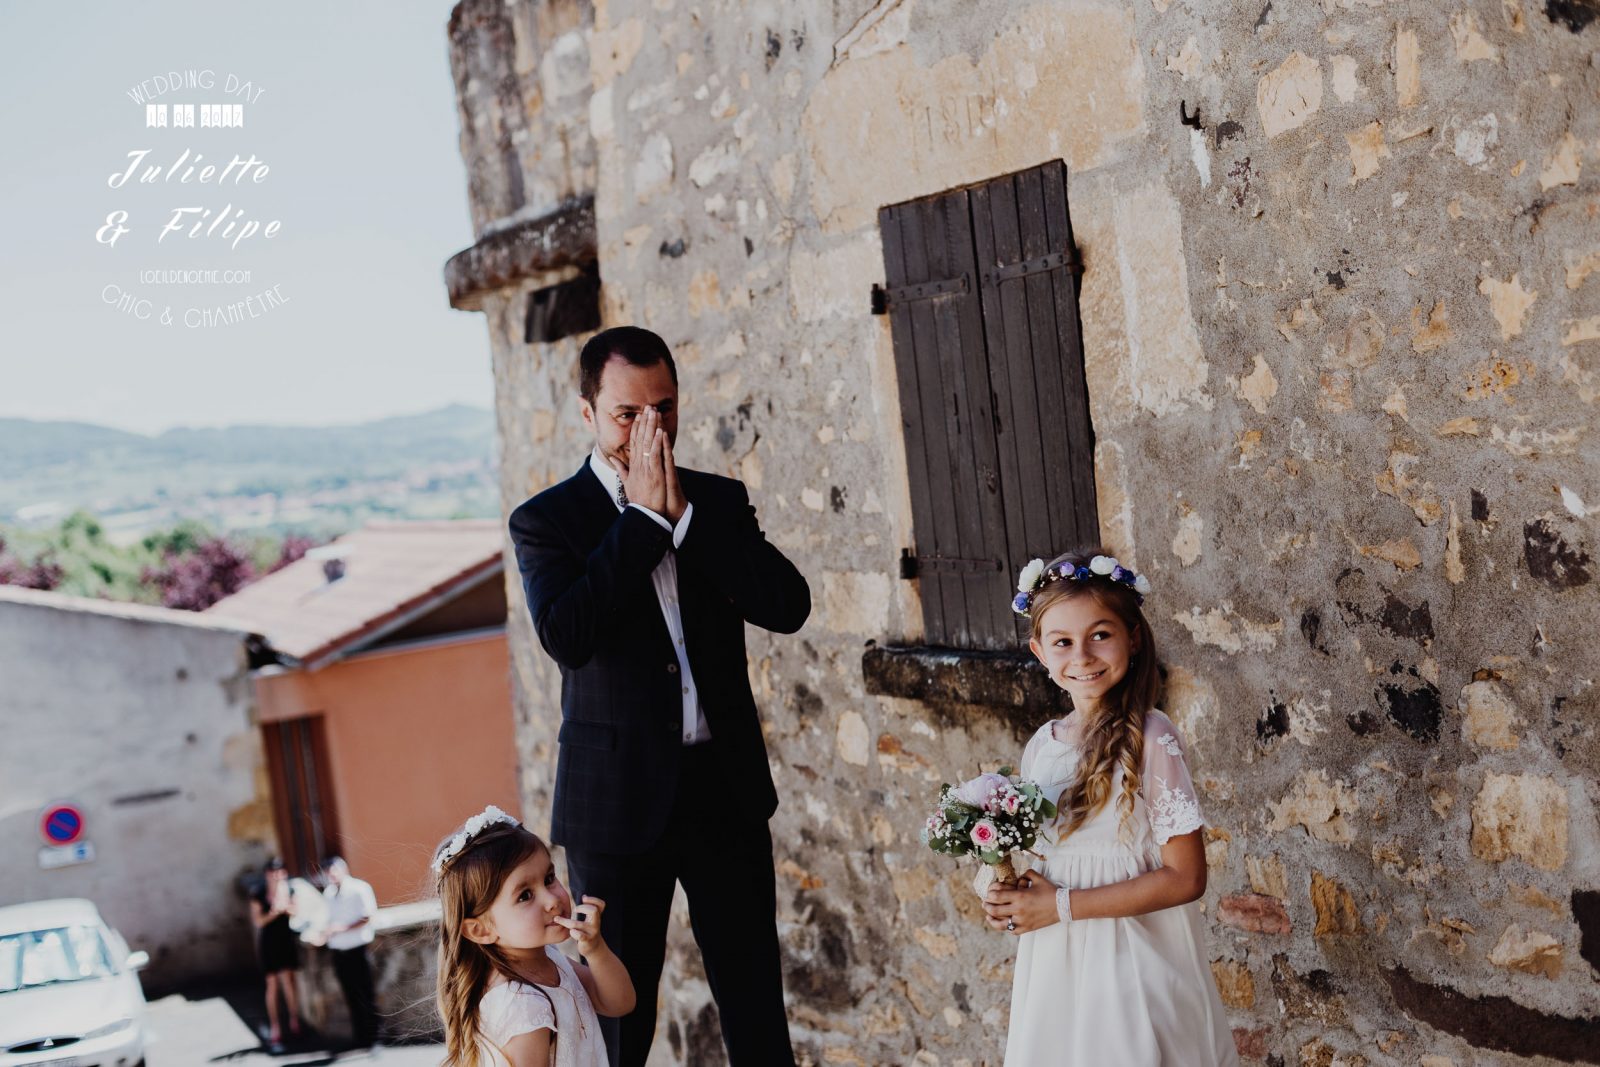 photo de mariage chic et champêtre par L'oeil de Noémie, élue meilleur photographe de mariage en Auvergne en 2017